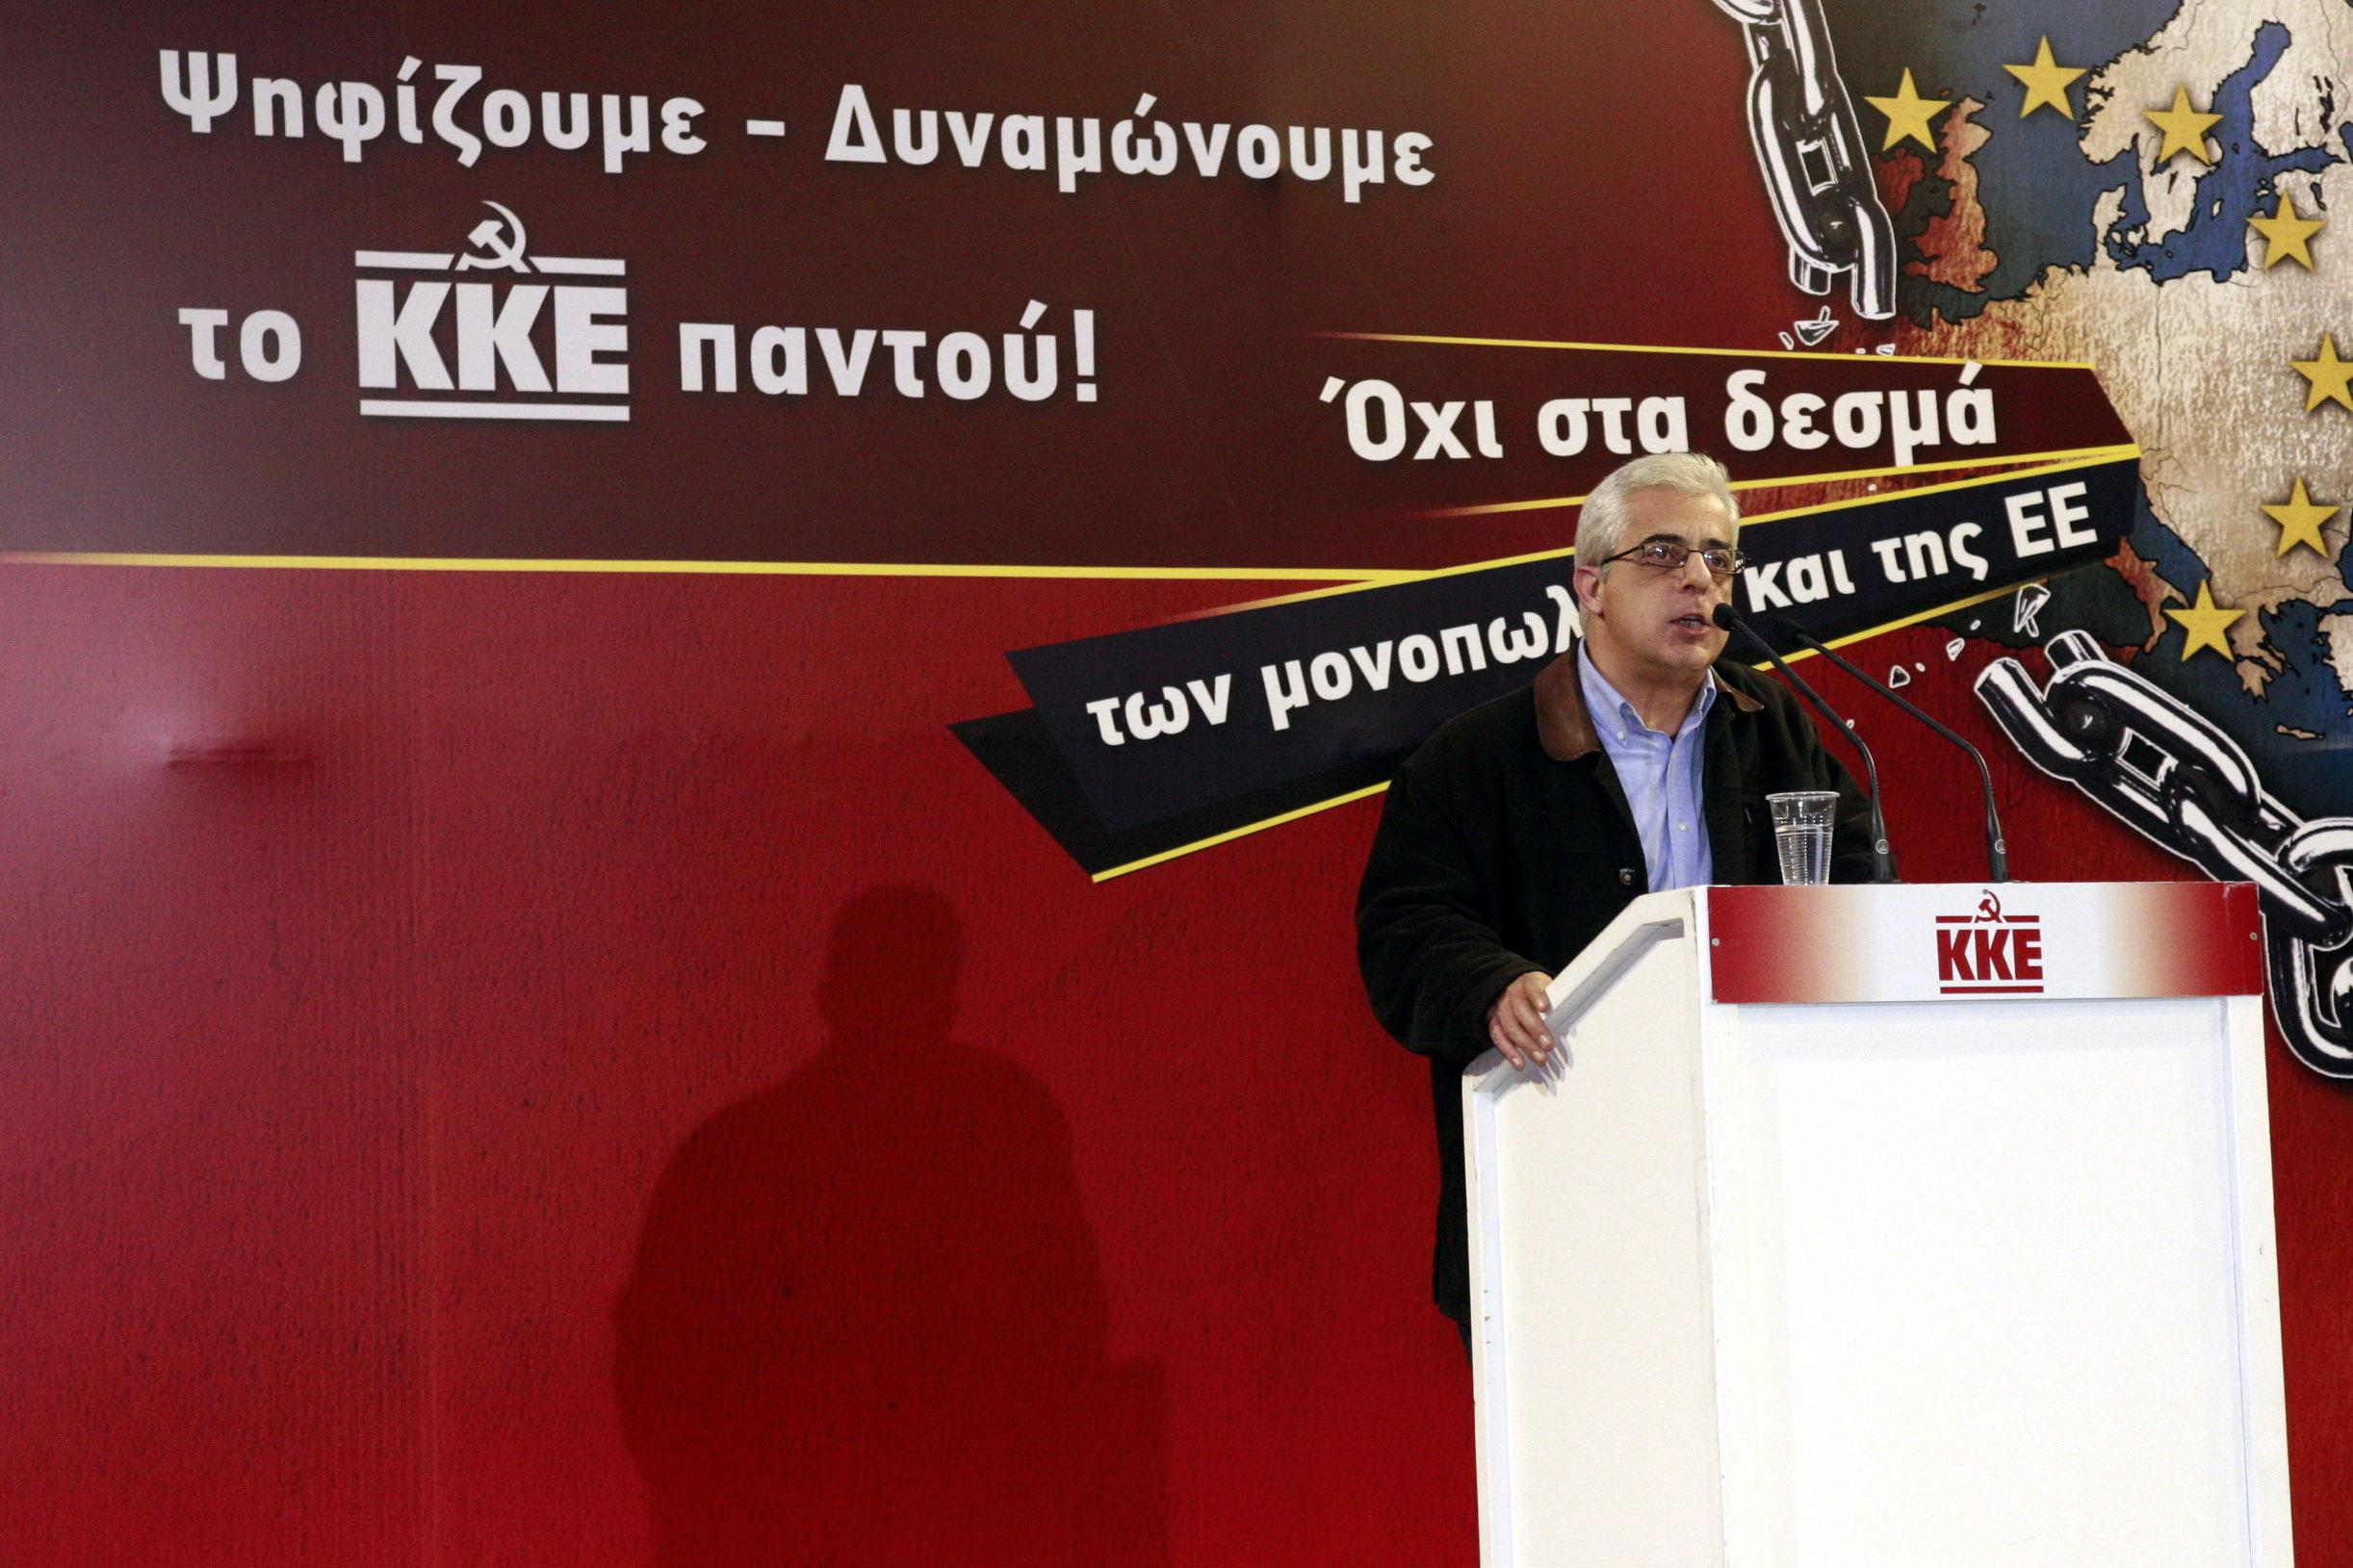 Ν.Σοφιανός: Τέλος στη φορομπηχτική πολιτική στο δήμο Αθηναίων